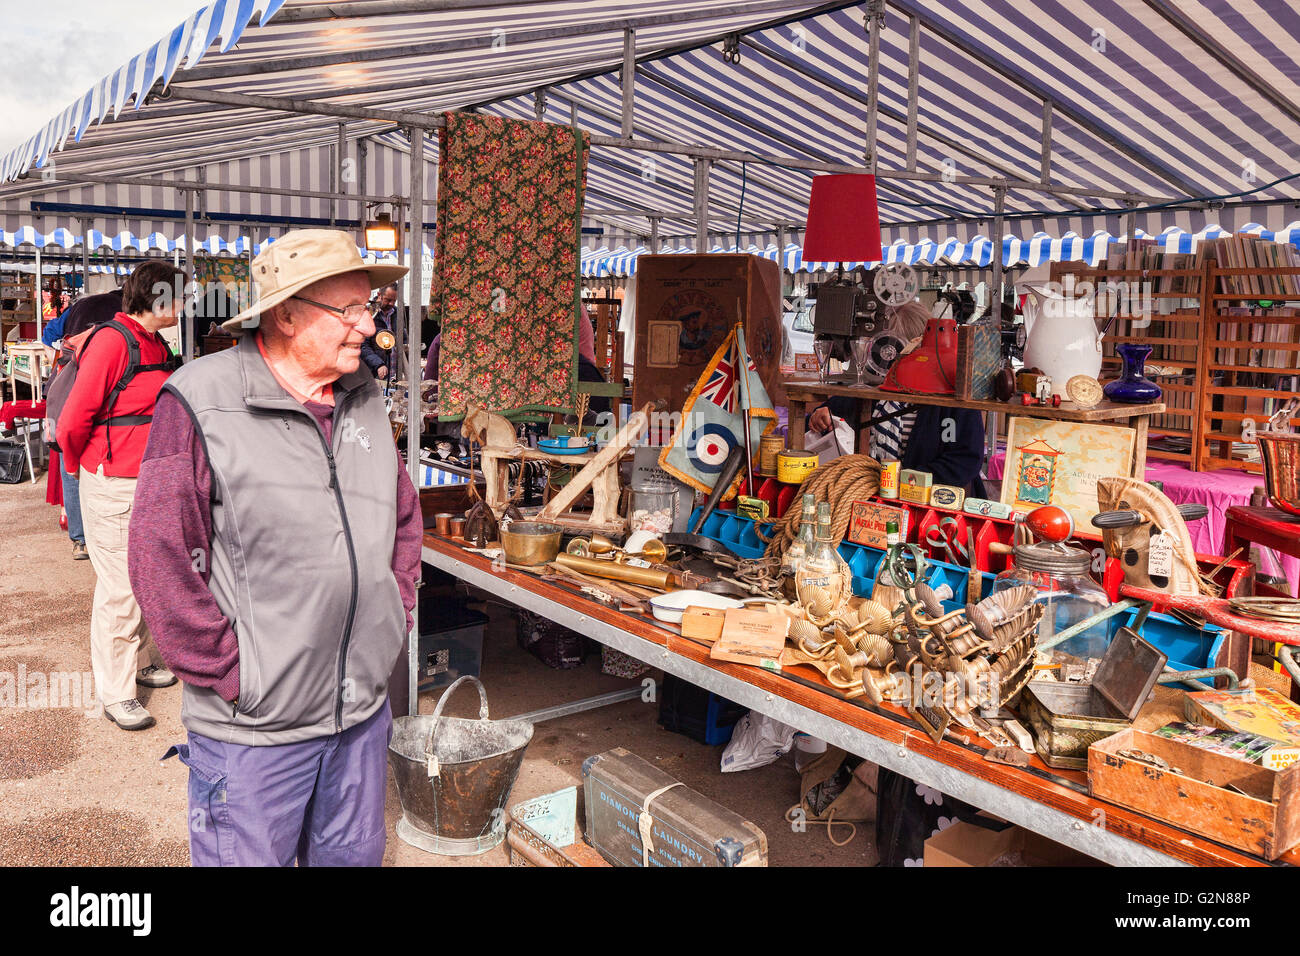 Personen an Ständen am Markt Ludlow, Shropshire, England, UK Stockfoto